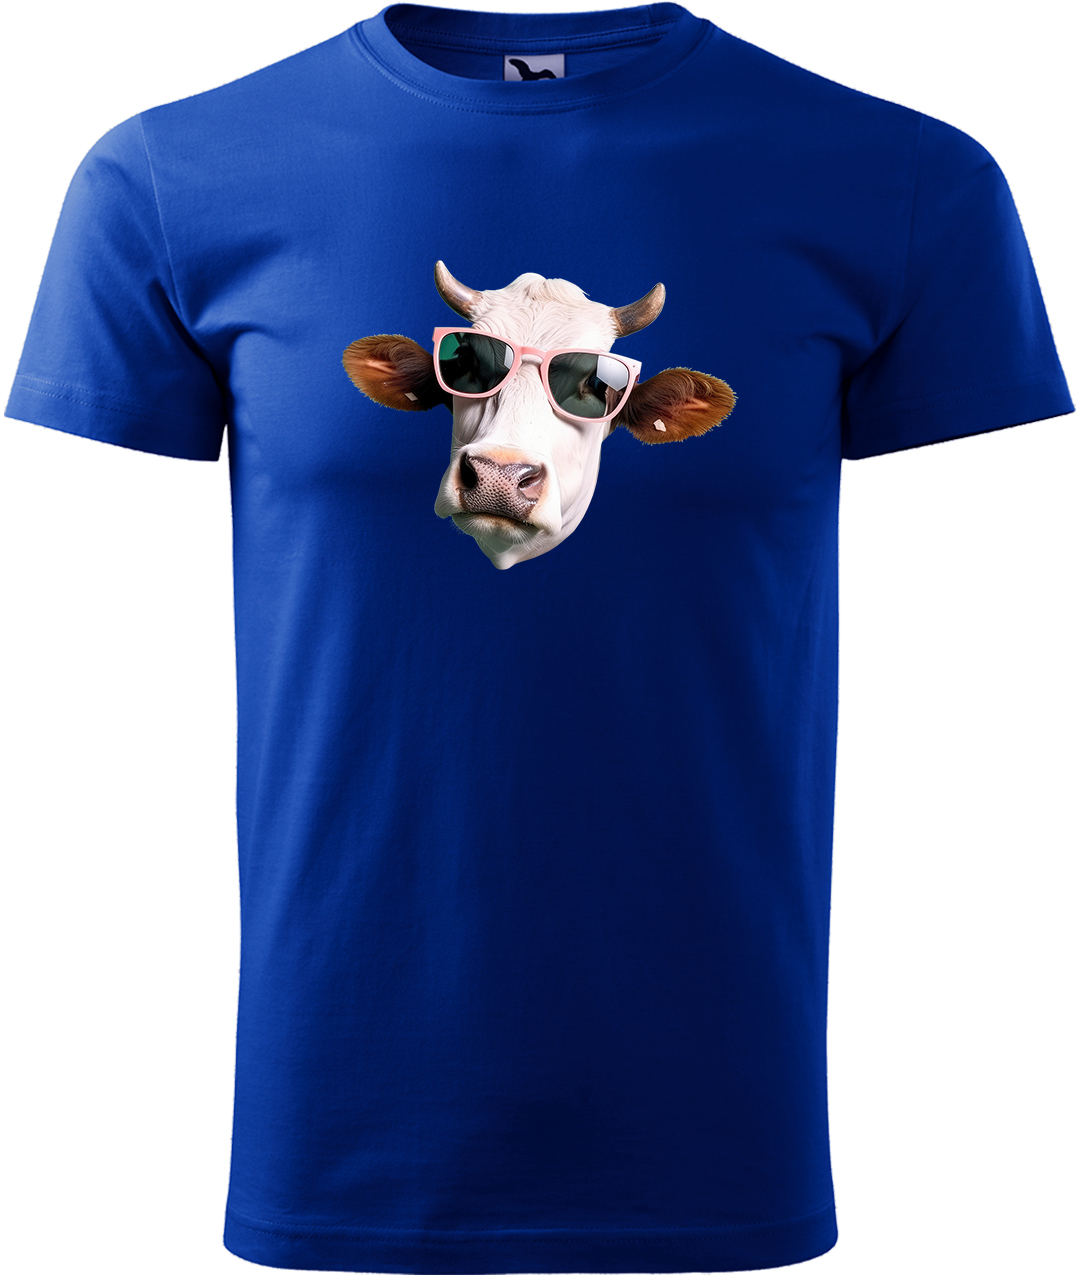 Pánské tričko s krávou - Kráva v brýlích Velikost: L, Barva: Královská modrá (05), Střih: pánský